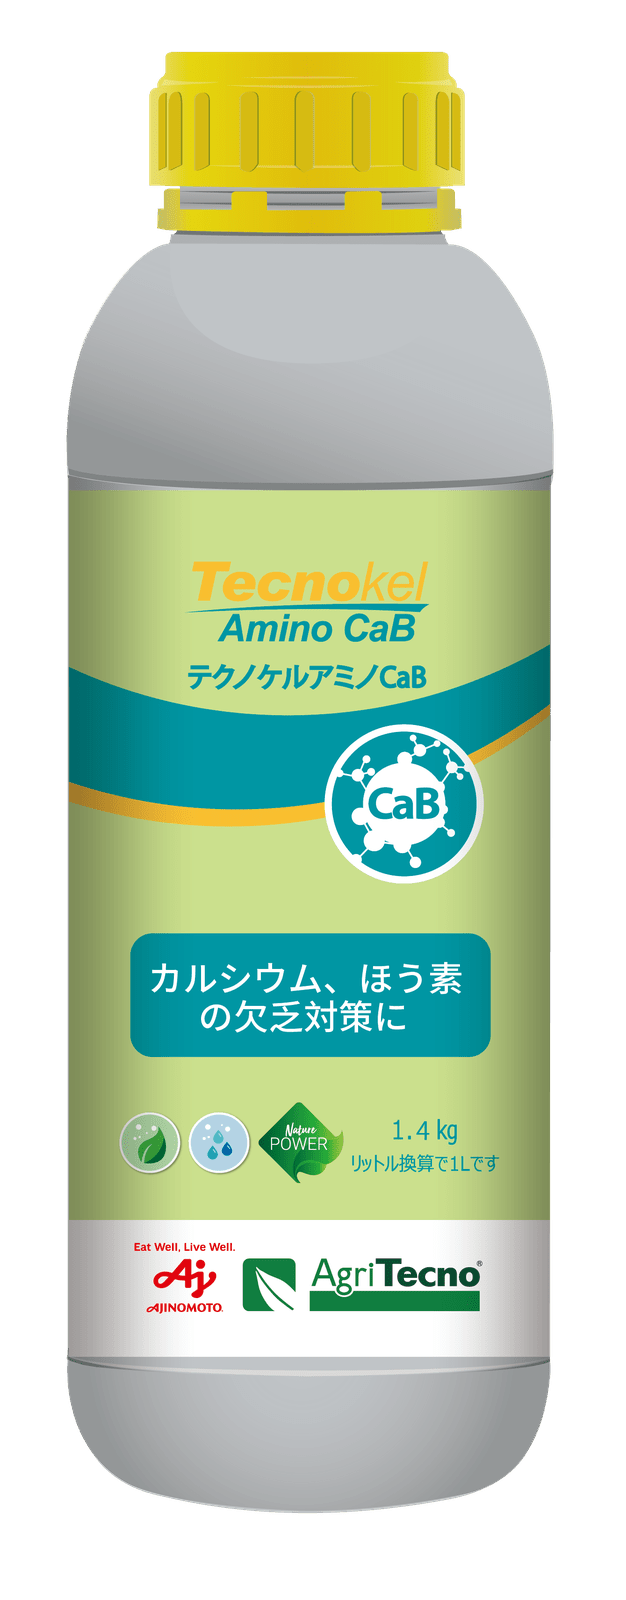 Tecnokel Amino CaB